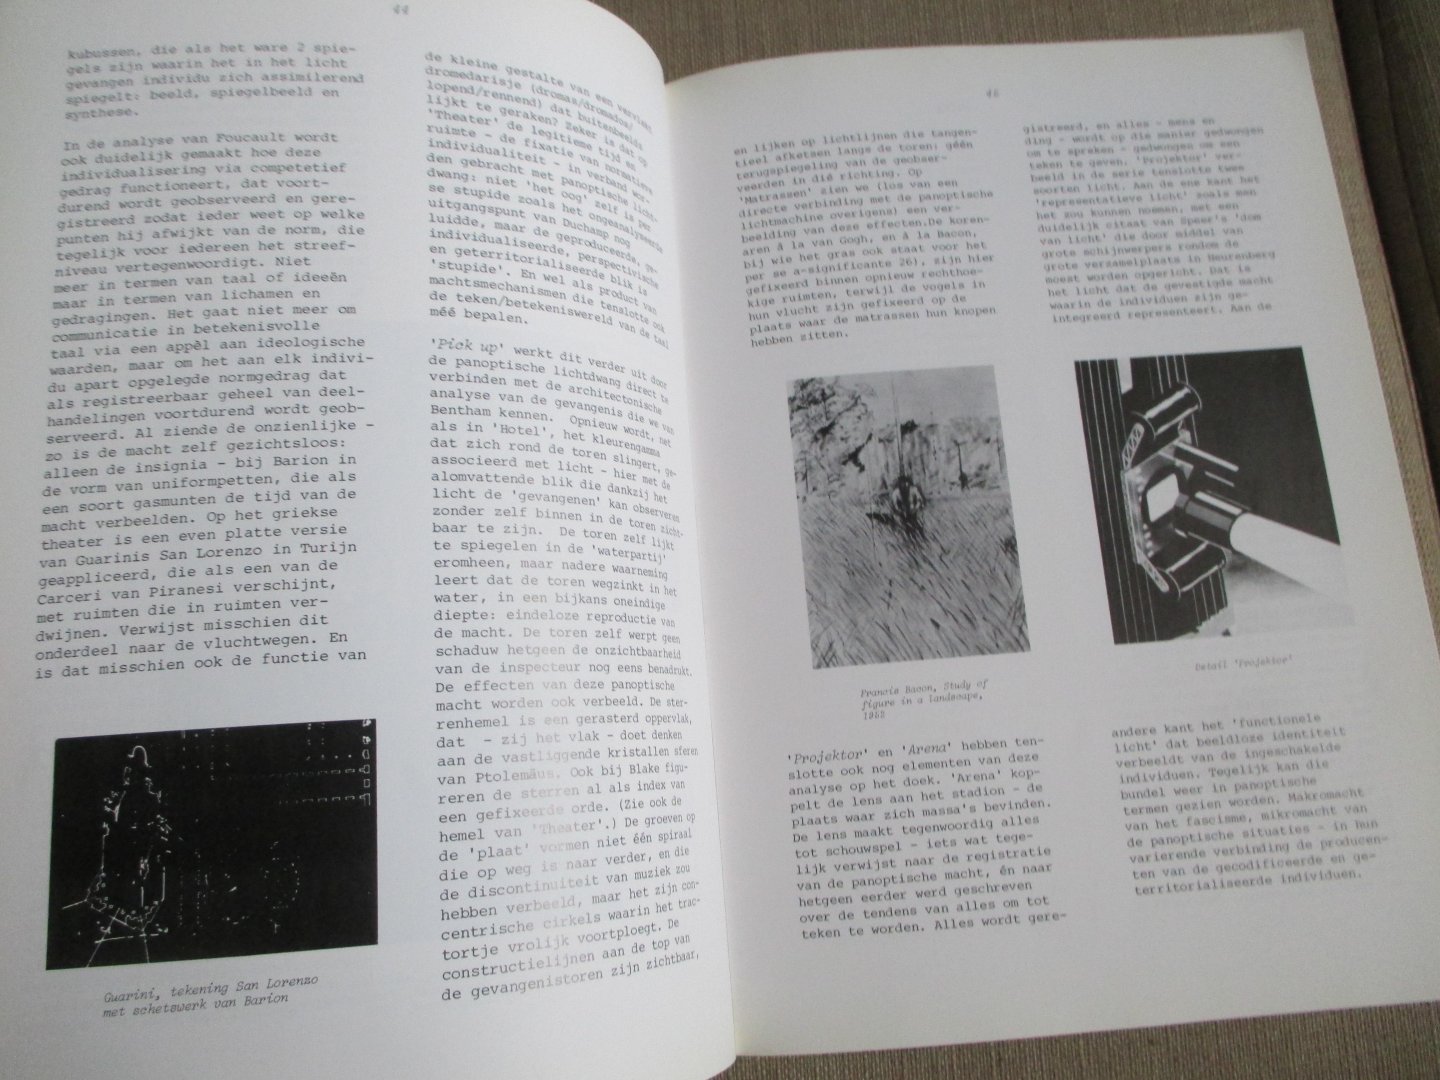 Sierksma / Graafland Bentham - Machinale Metamorfosen catalogus bij het werk van Raymond Barion